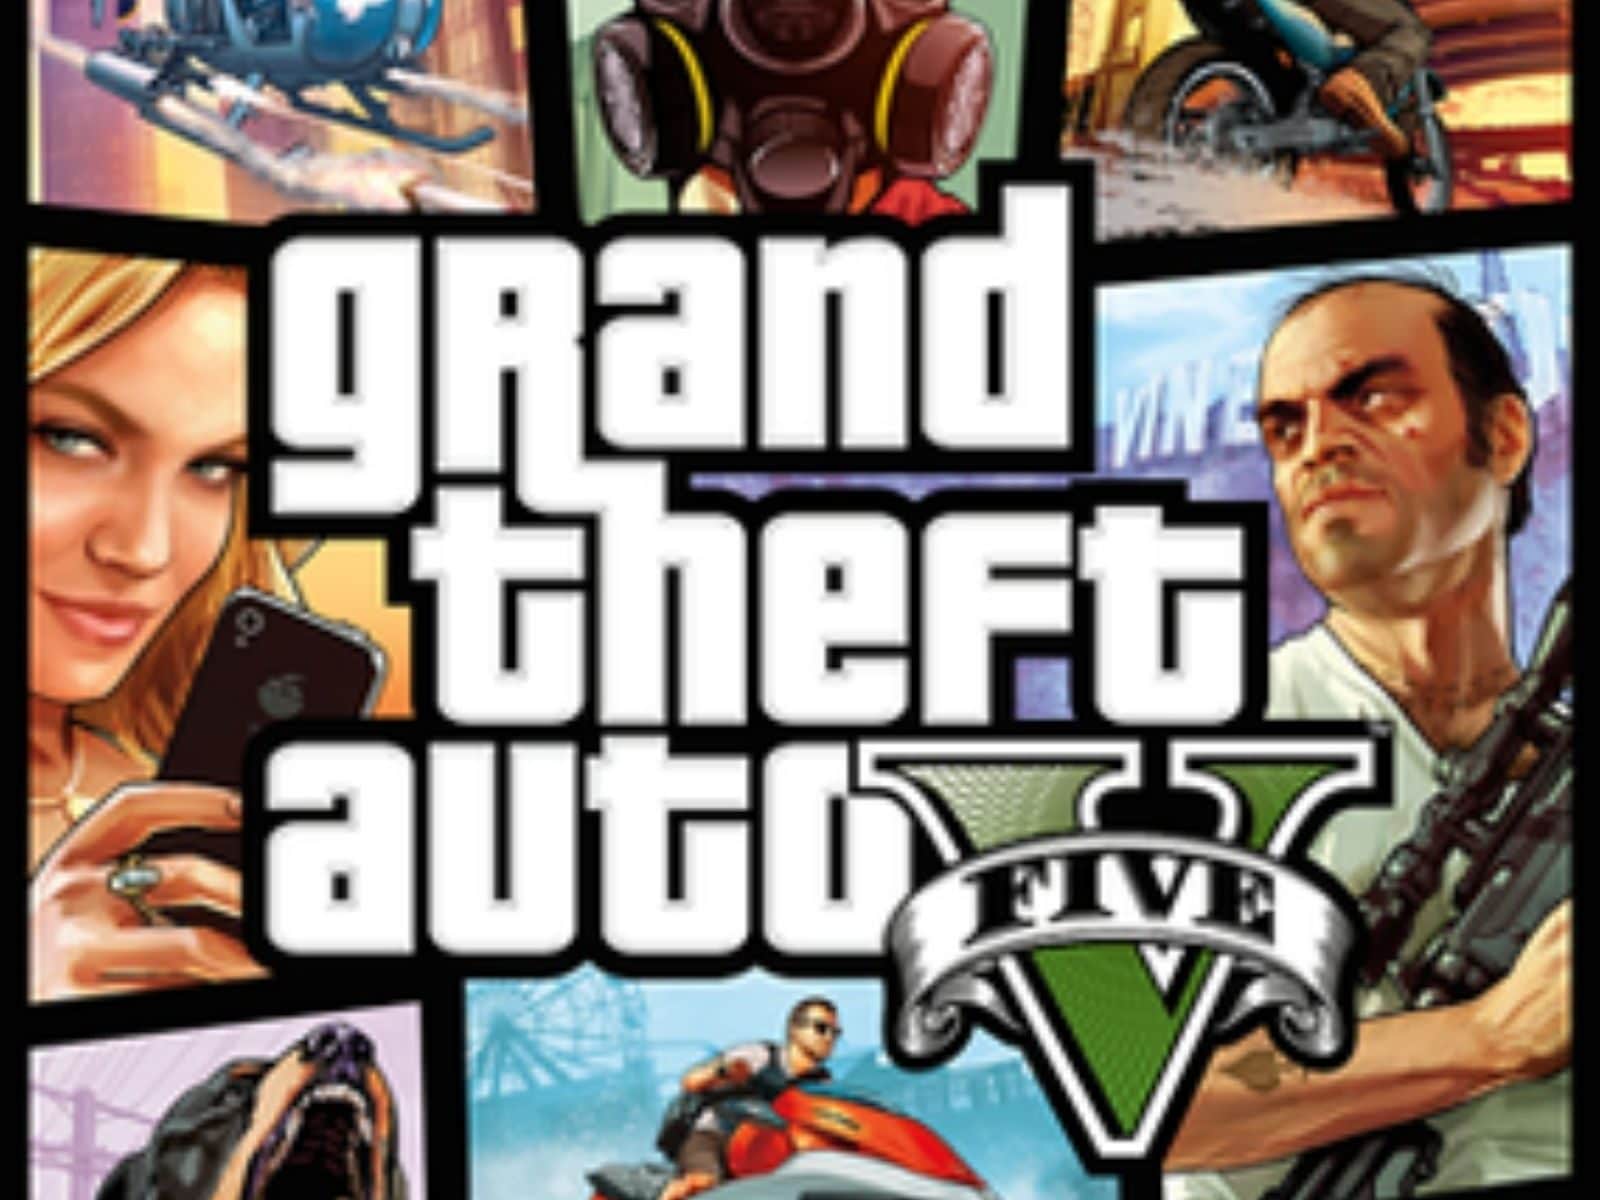 Rockstar Games PS5 Grand Theft Auto V : : Video Games